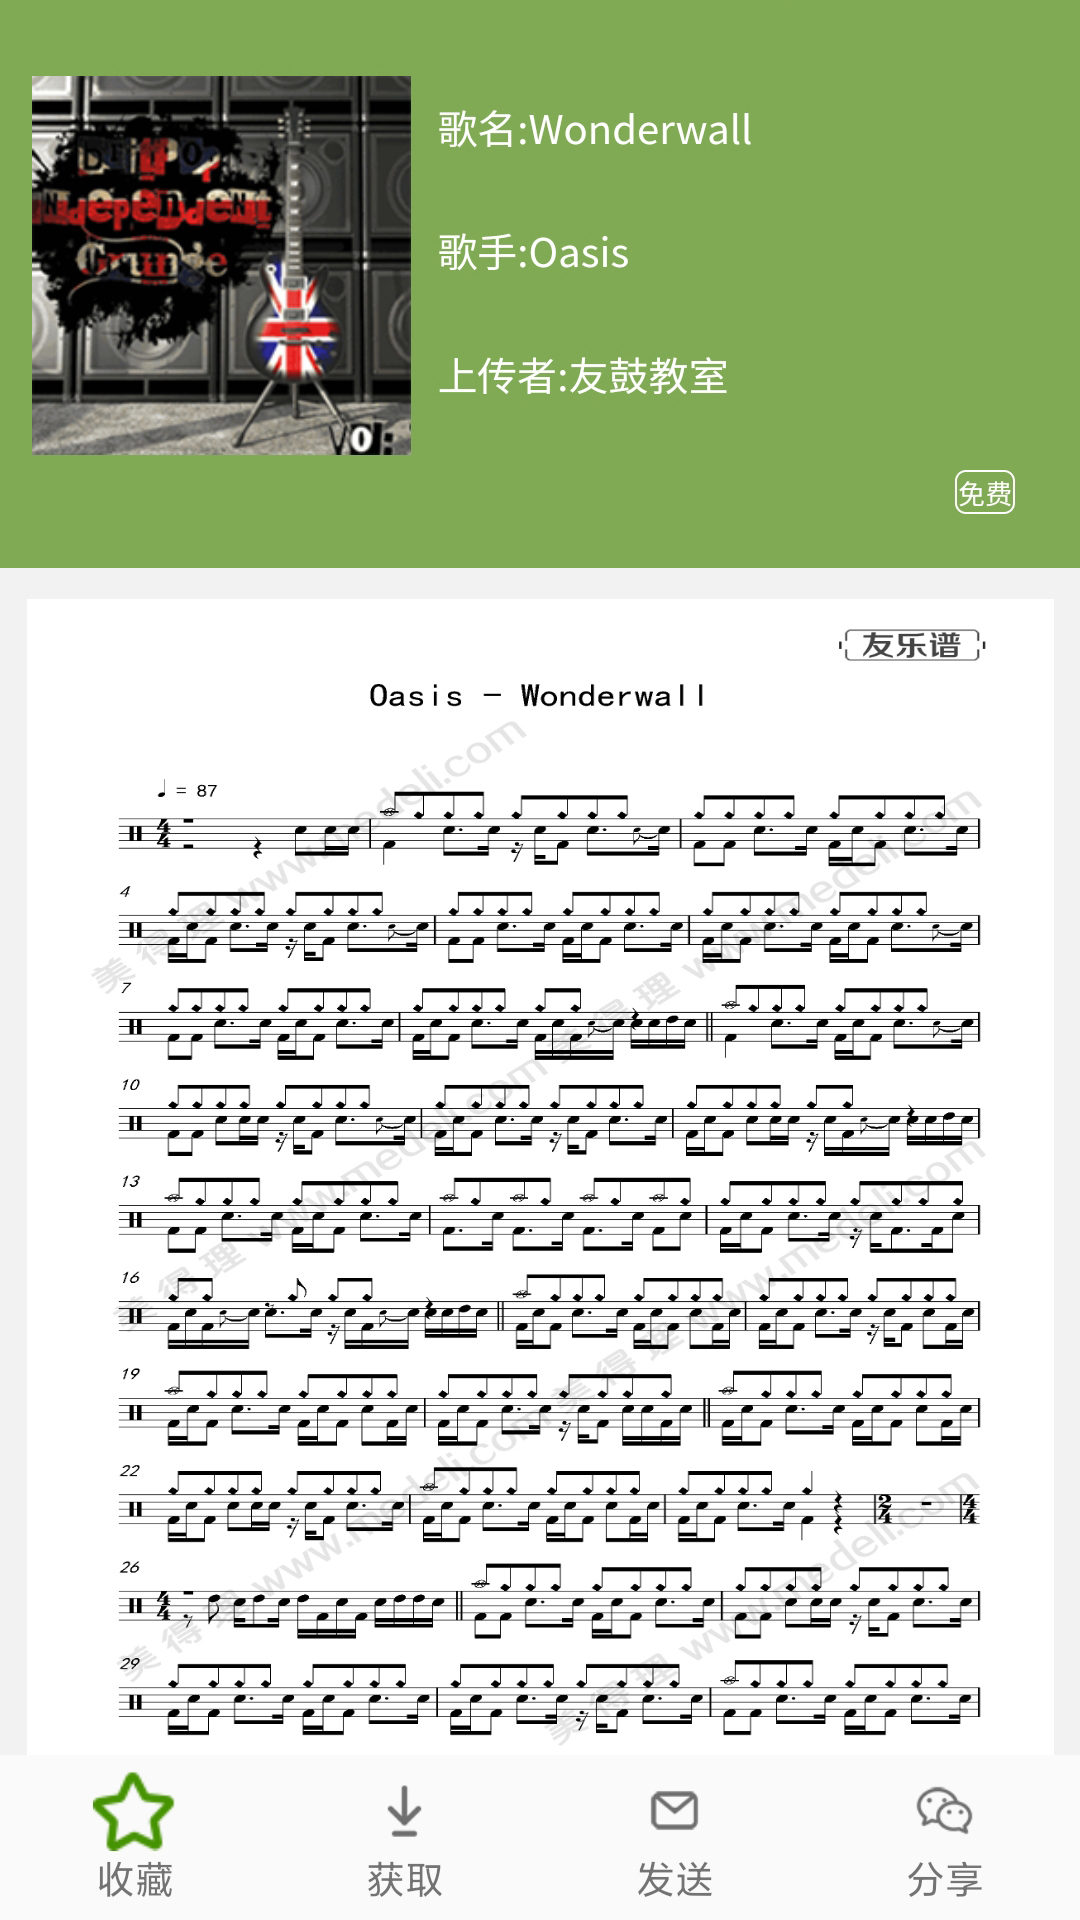 友乐谱 v1.1.6-爵士鼓谱学习和分享平台截图2